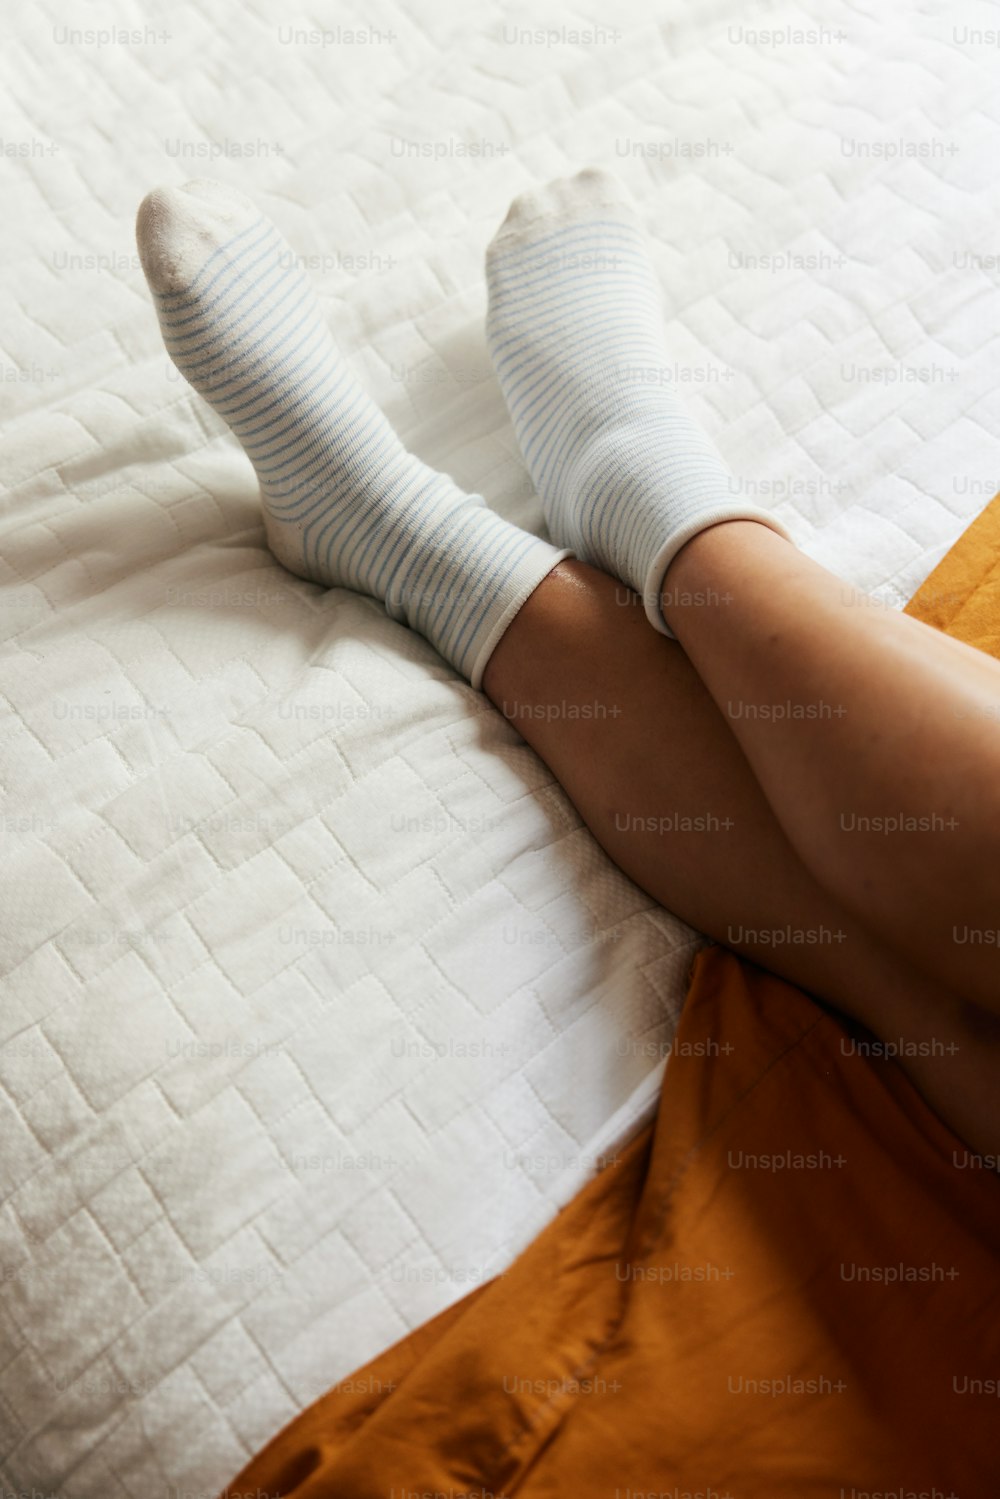 una persona sdraiata su un letto con calzini bianchi